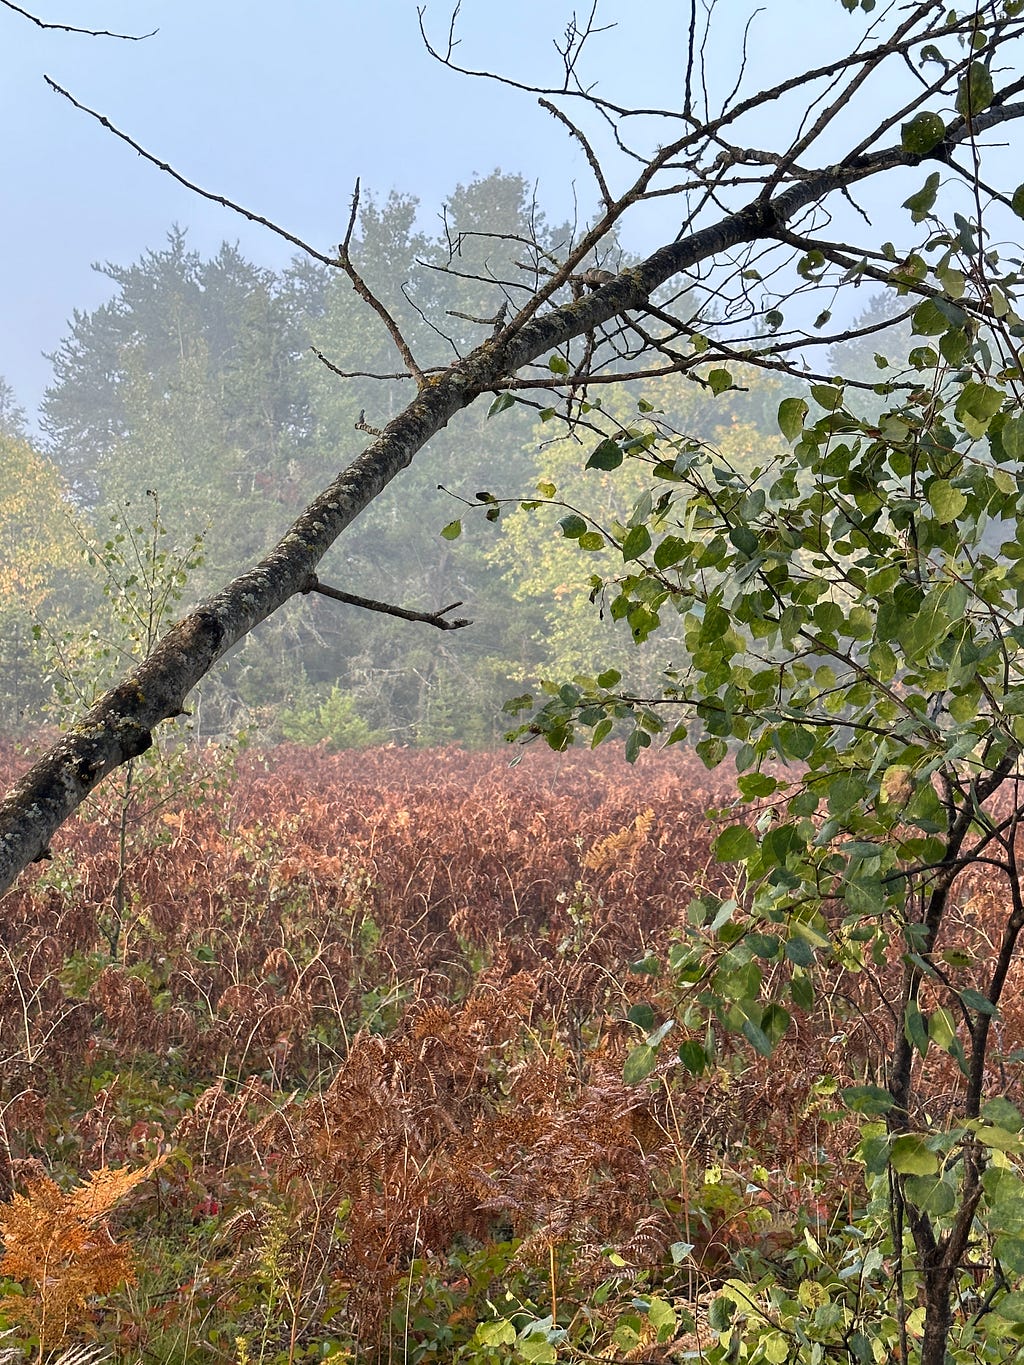 foggy landscape:brown fern foliage